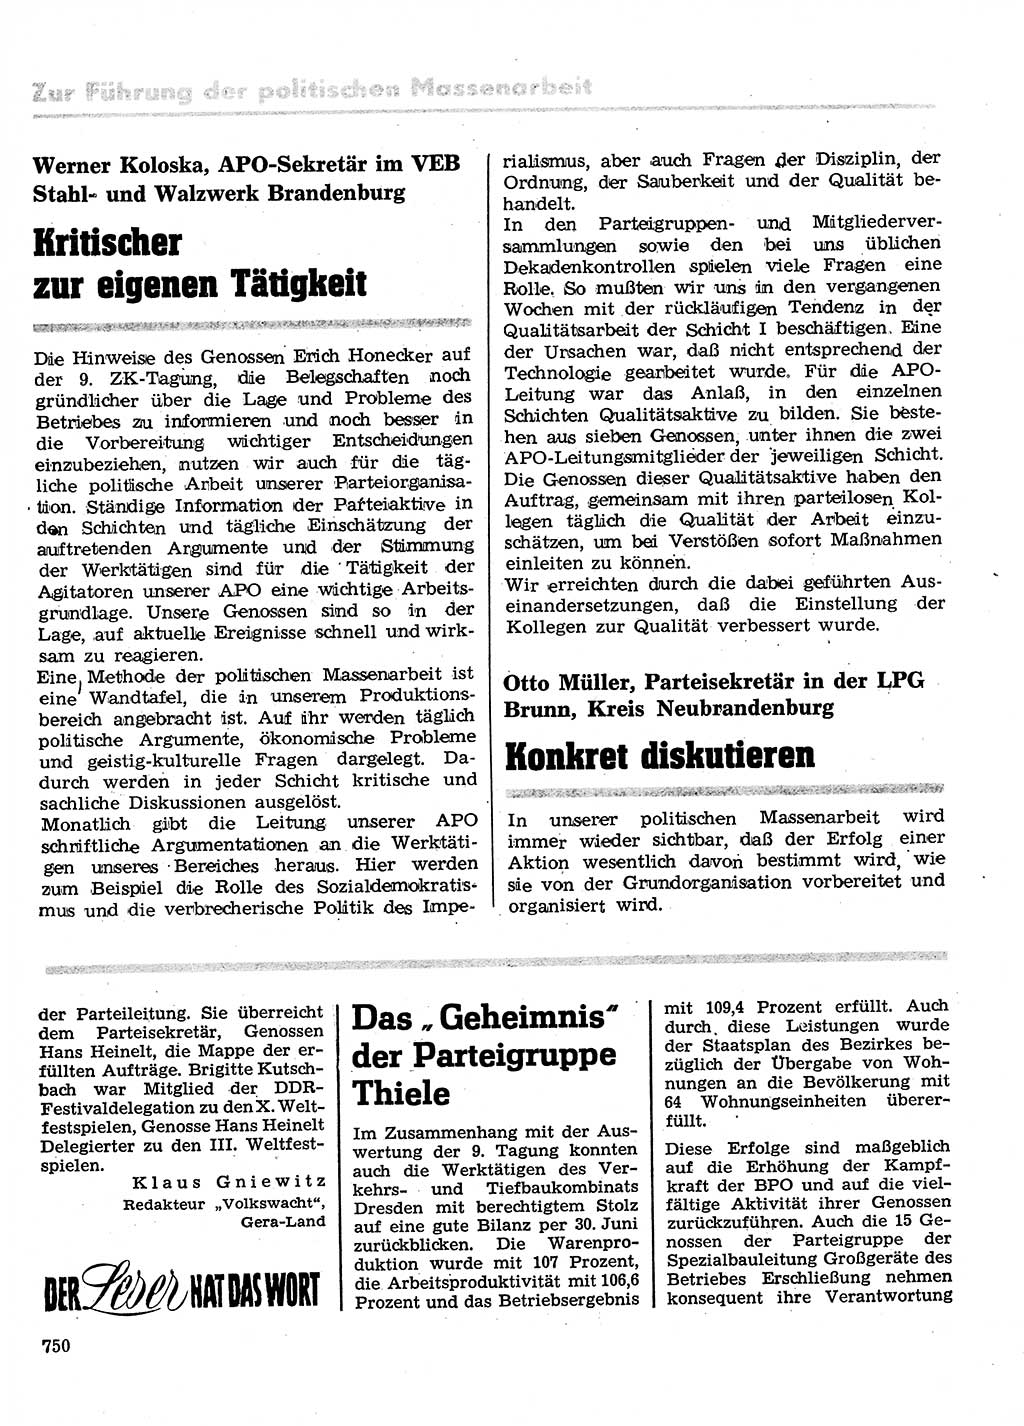 Neuer Weg (NW), Organ des Zentralkomitees (ZK) der SED (Sozialistische Einheitspartei Deutschlands) für Fragen des Parteilebens, 28. Jahrgang [Deutsche Demokratische Republik (DDR)] 1973, Seite 750 (NW ZK SED DDR 1973, S. 750)